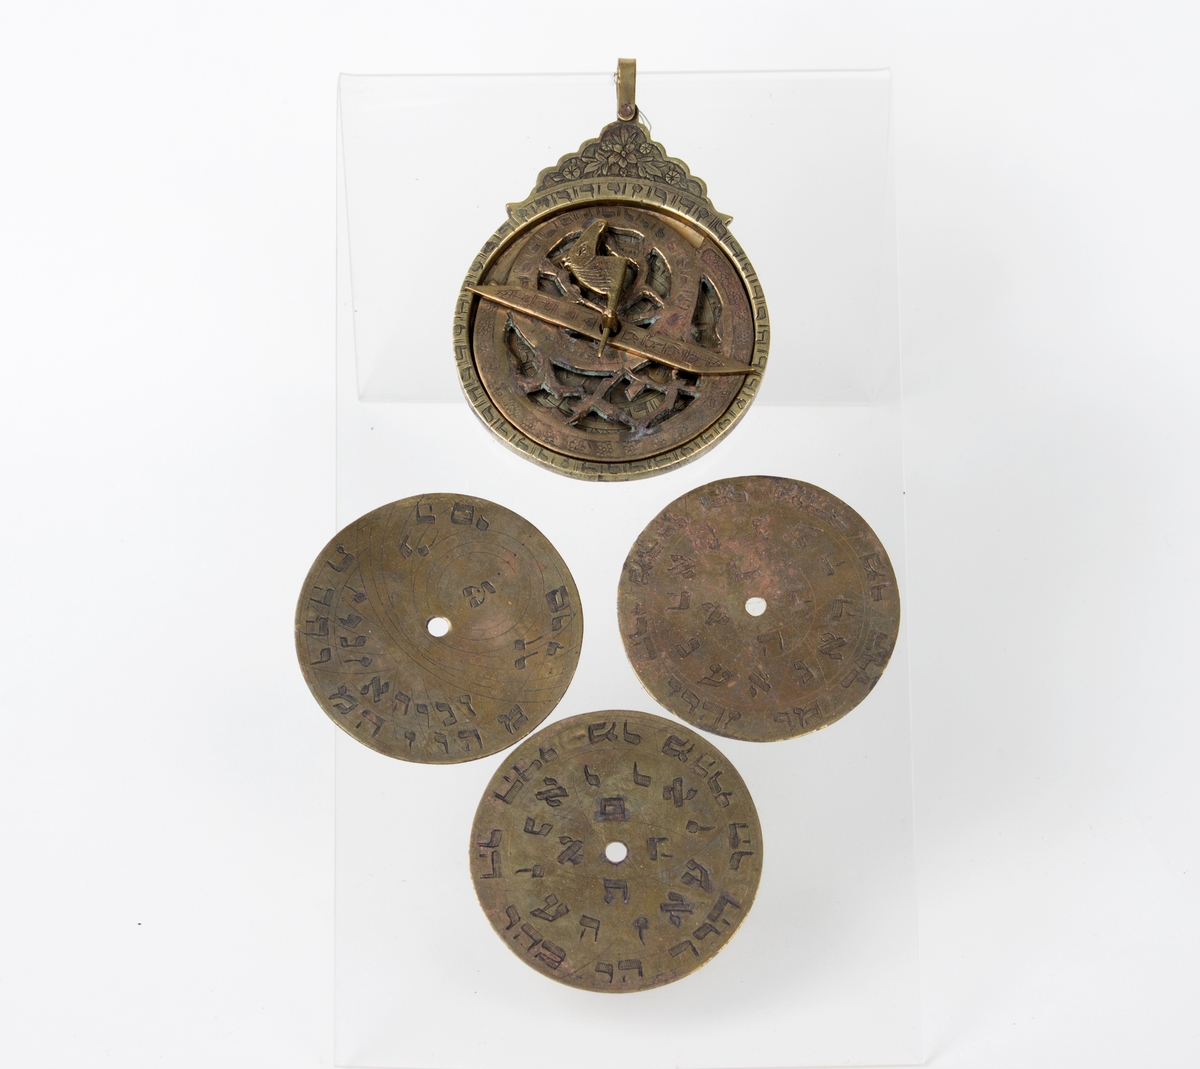 Astrolabium i messing i åtte deler med hebraisk skrifttegn: 5 skiver, 1 viser, 1 stift, 1 pinn m/hestehode. 3 av disse skivene er utstilt sammen med astrolabien.De sirkelformede messingplatene kan skiftes ut og dreies rundt.